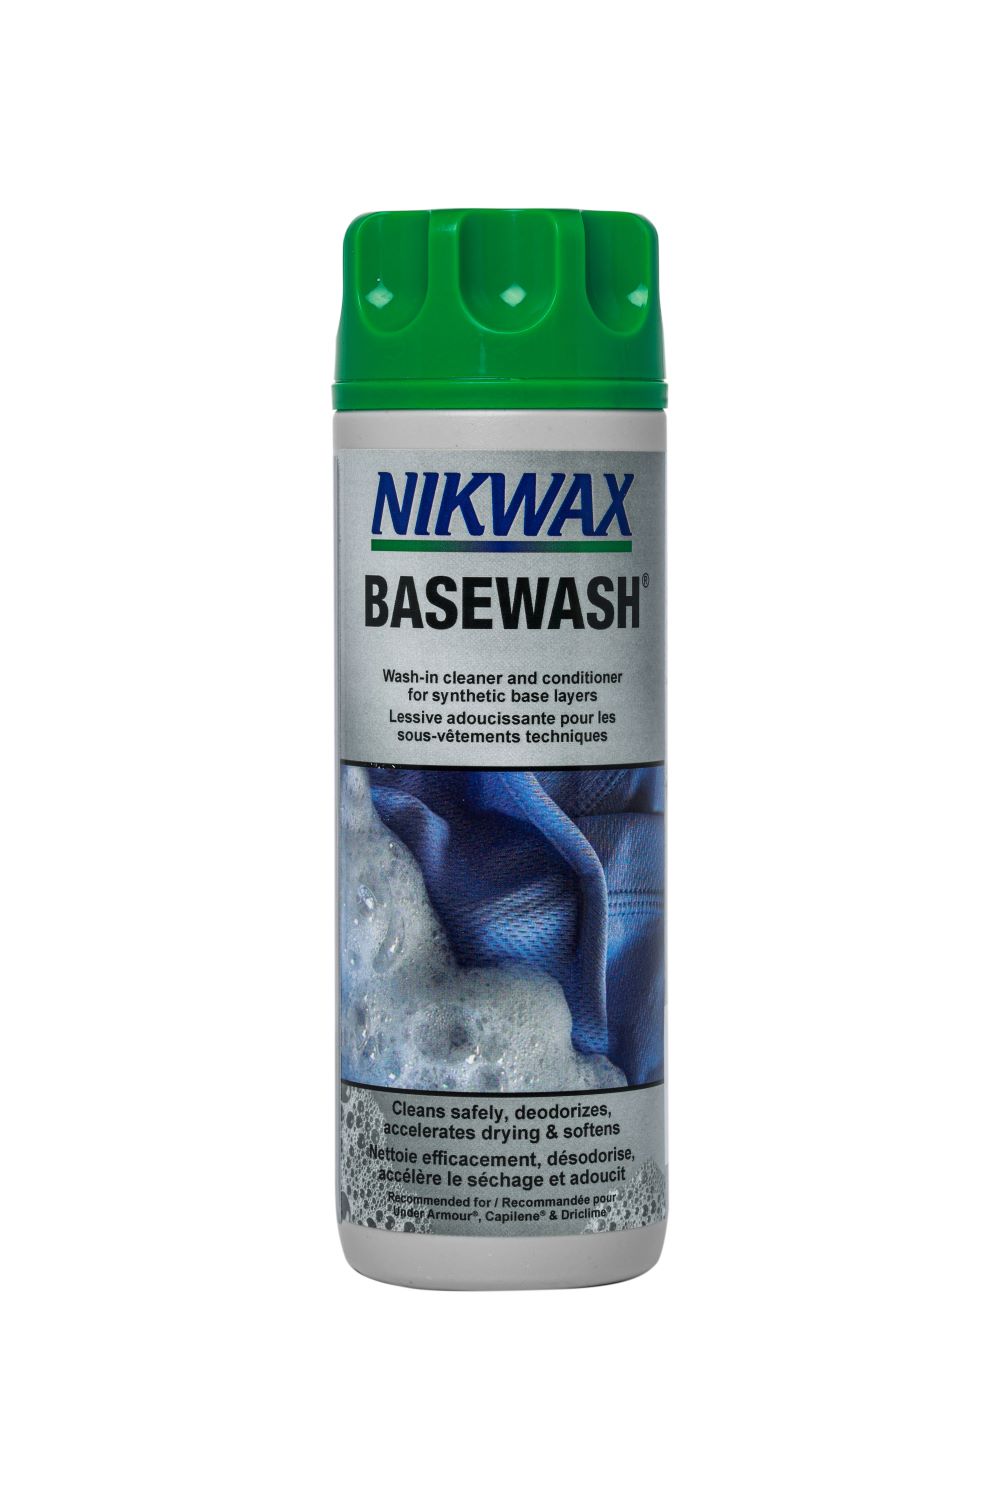 Nikwax Basewash 10oz - Work World - Workwear, Work Boots, Safety Gear